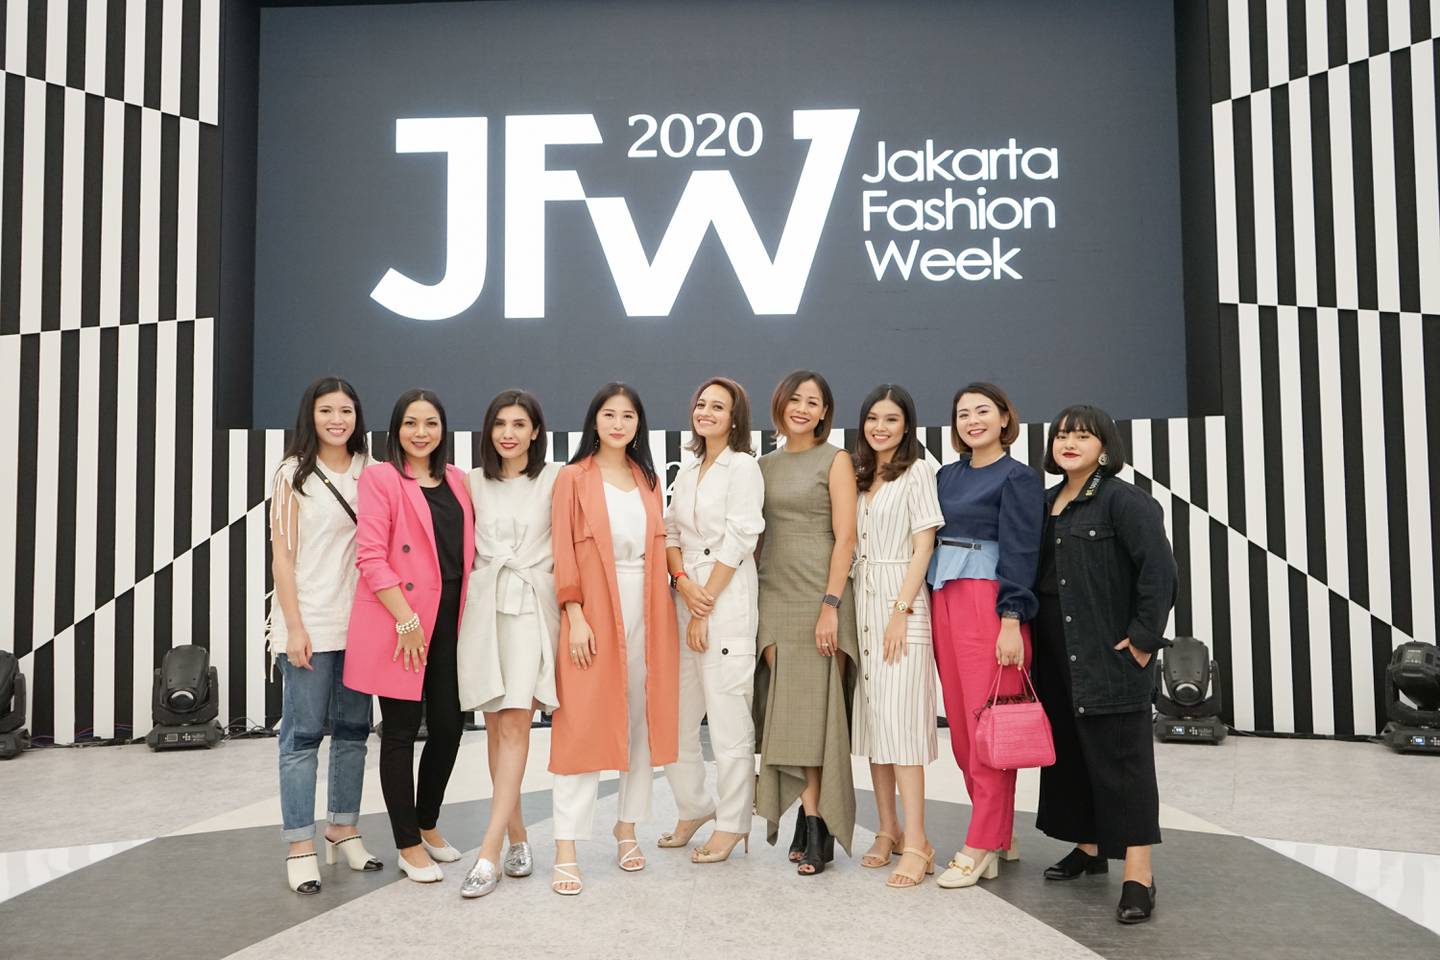 Women at Jakarta Fashion Week 2020. Tinkerlust.